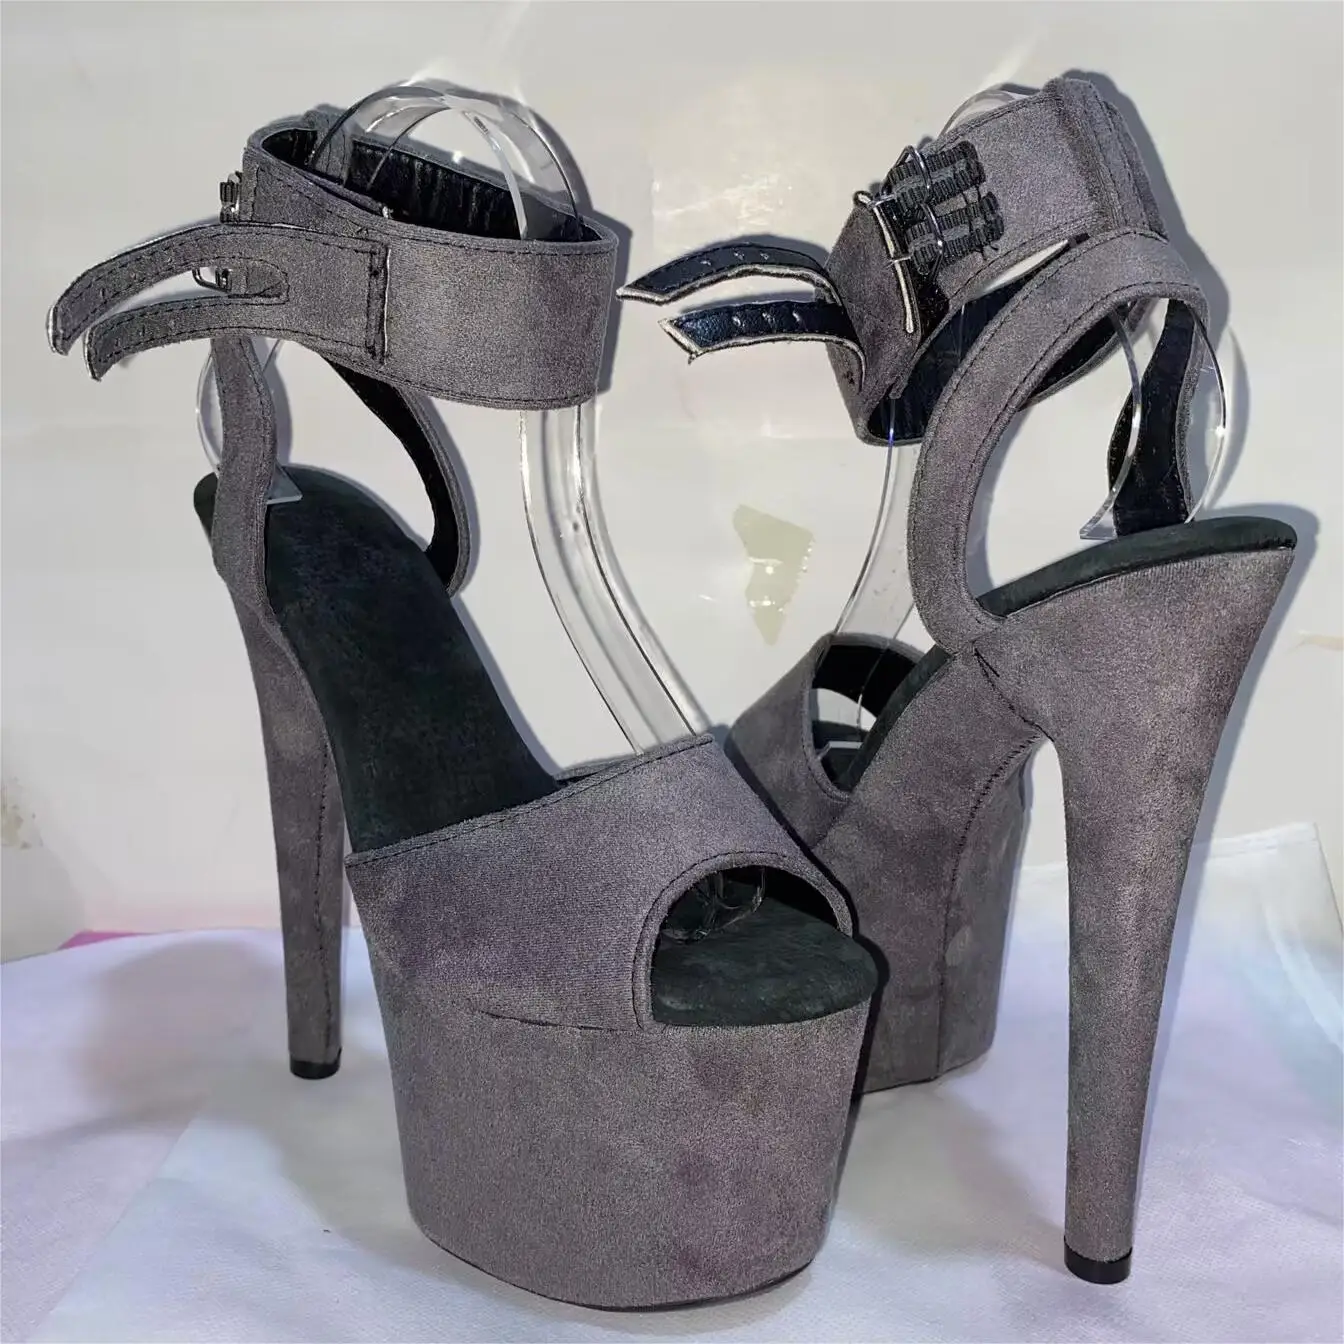 

Suede root waterproof platform, summer 17 cm stiletto heels, nightclub sexy 7 inch stiletto heels,